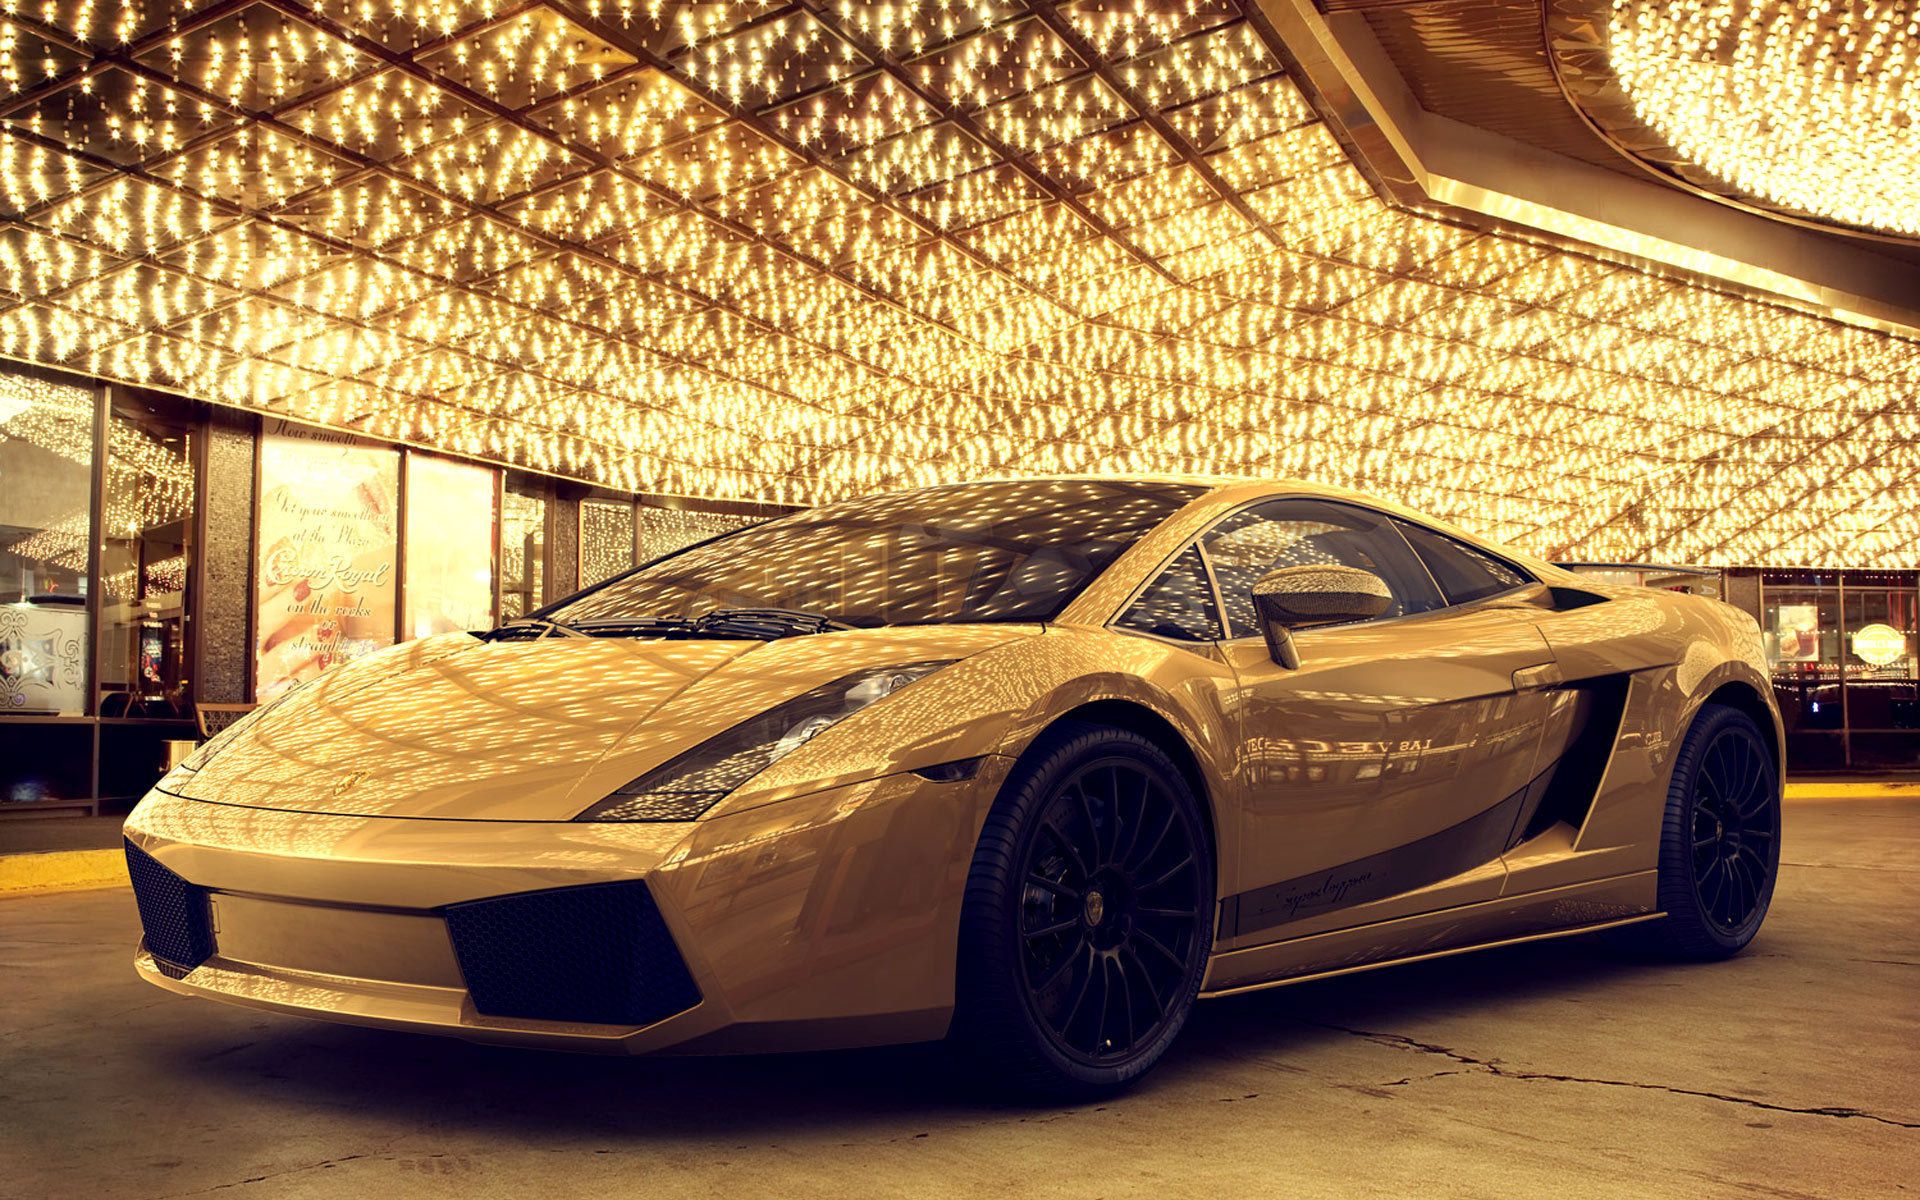 Tải miễn phí hình nền Lamborghini Veneno vàng HD để ngắm nhìn chiếc siêu xe đầy sức hút này trên màn hình của bạn. Hình nền với độ phân giải cao chất lượng tuyệt vời sẽ làm bạn say mê ngay lập tức.